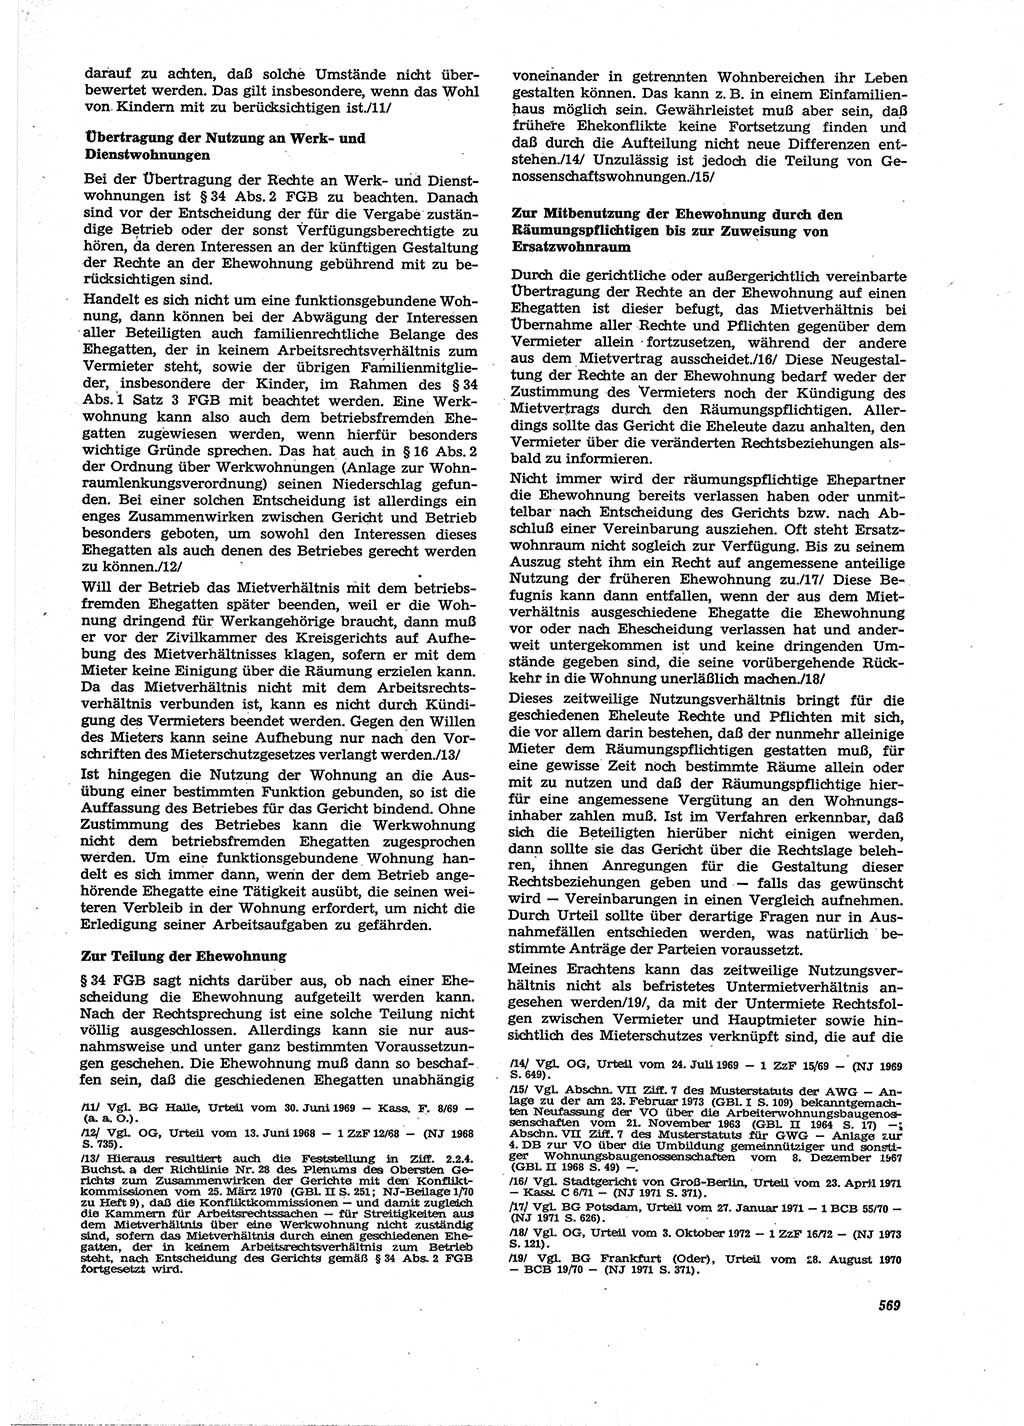 Neue Justiz (NJ), Zeitschrift für Recht und Rechtswissenschaft [Deutsche Demokratische Republik (DDR)], 27. Jahrgang 1973, Seite 569 (NJ DDR 1973, S. 569)